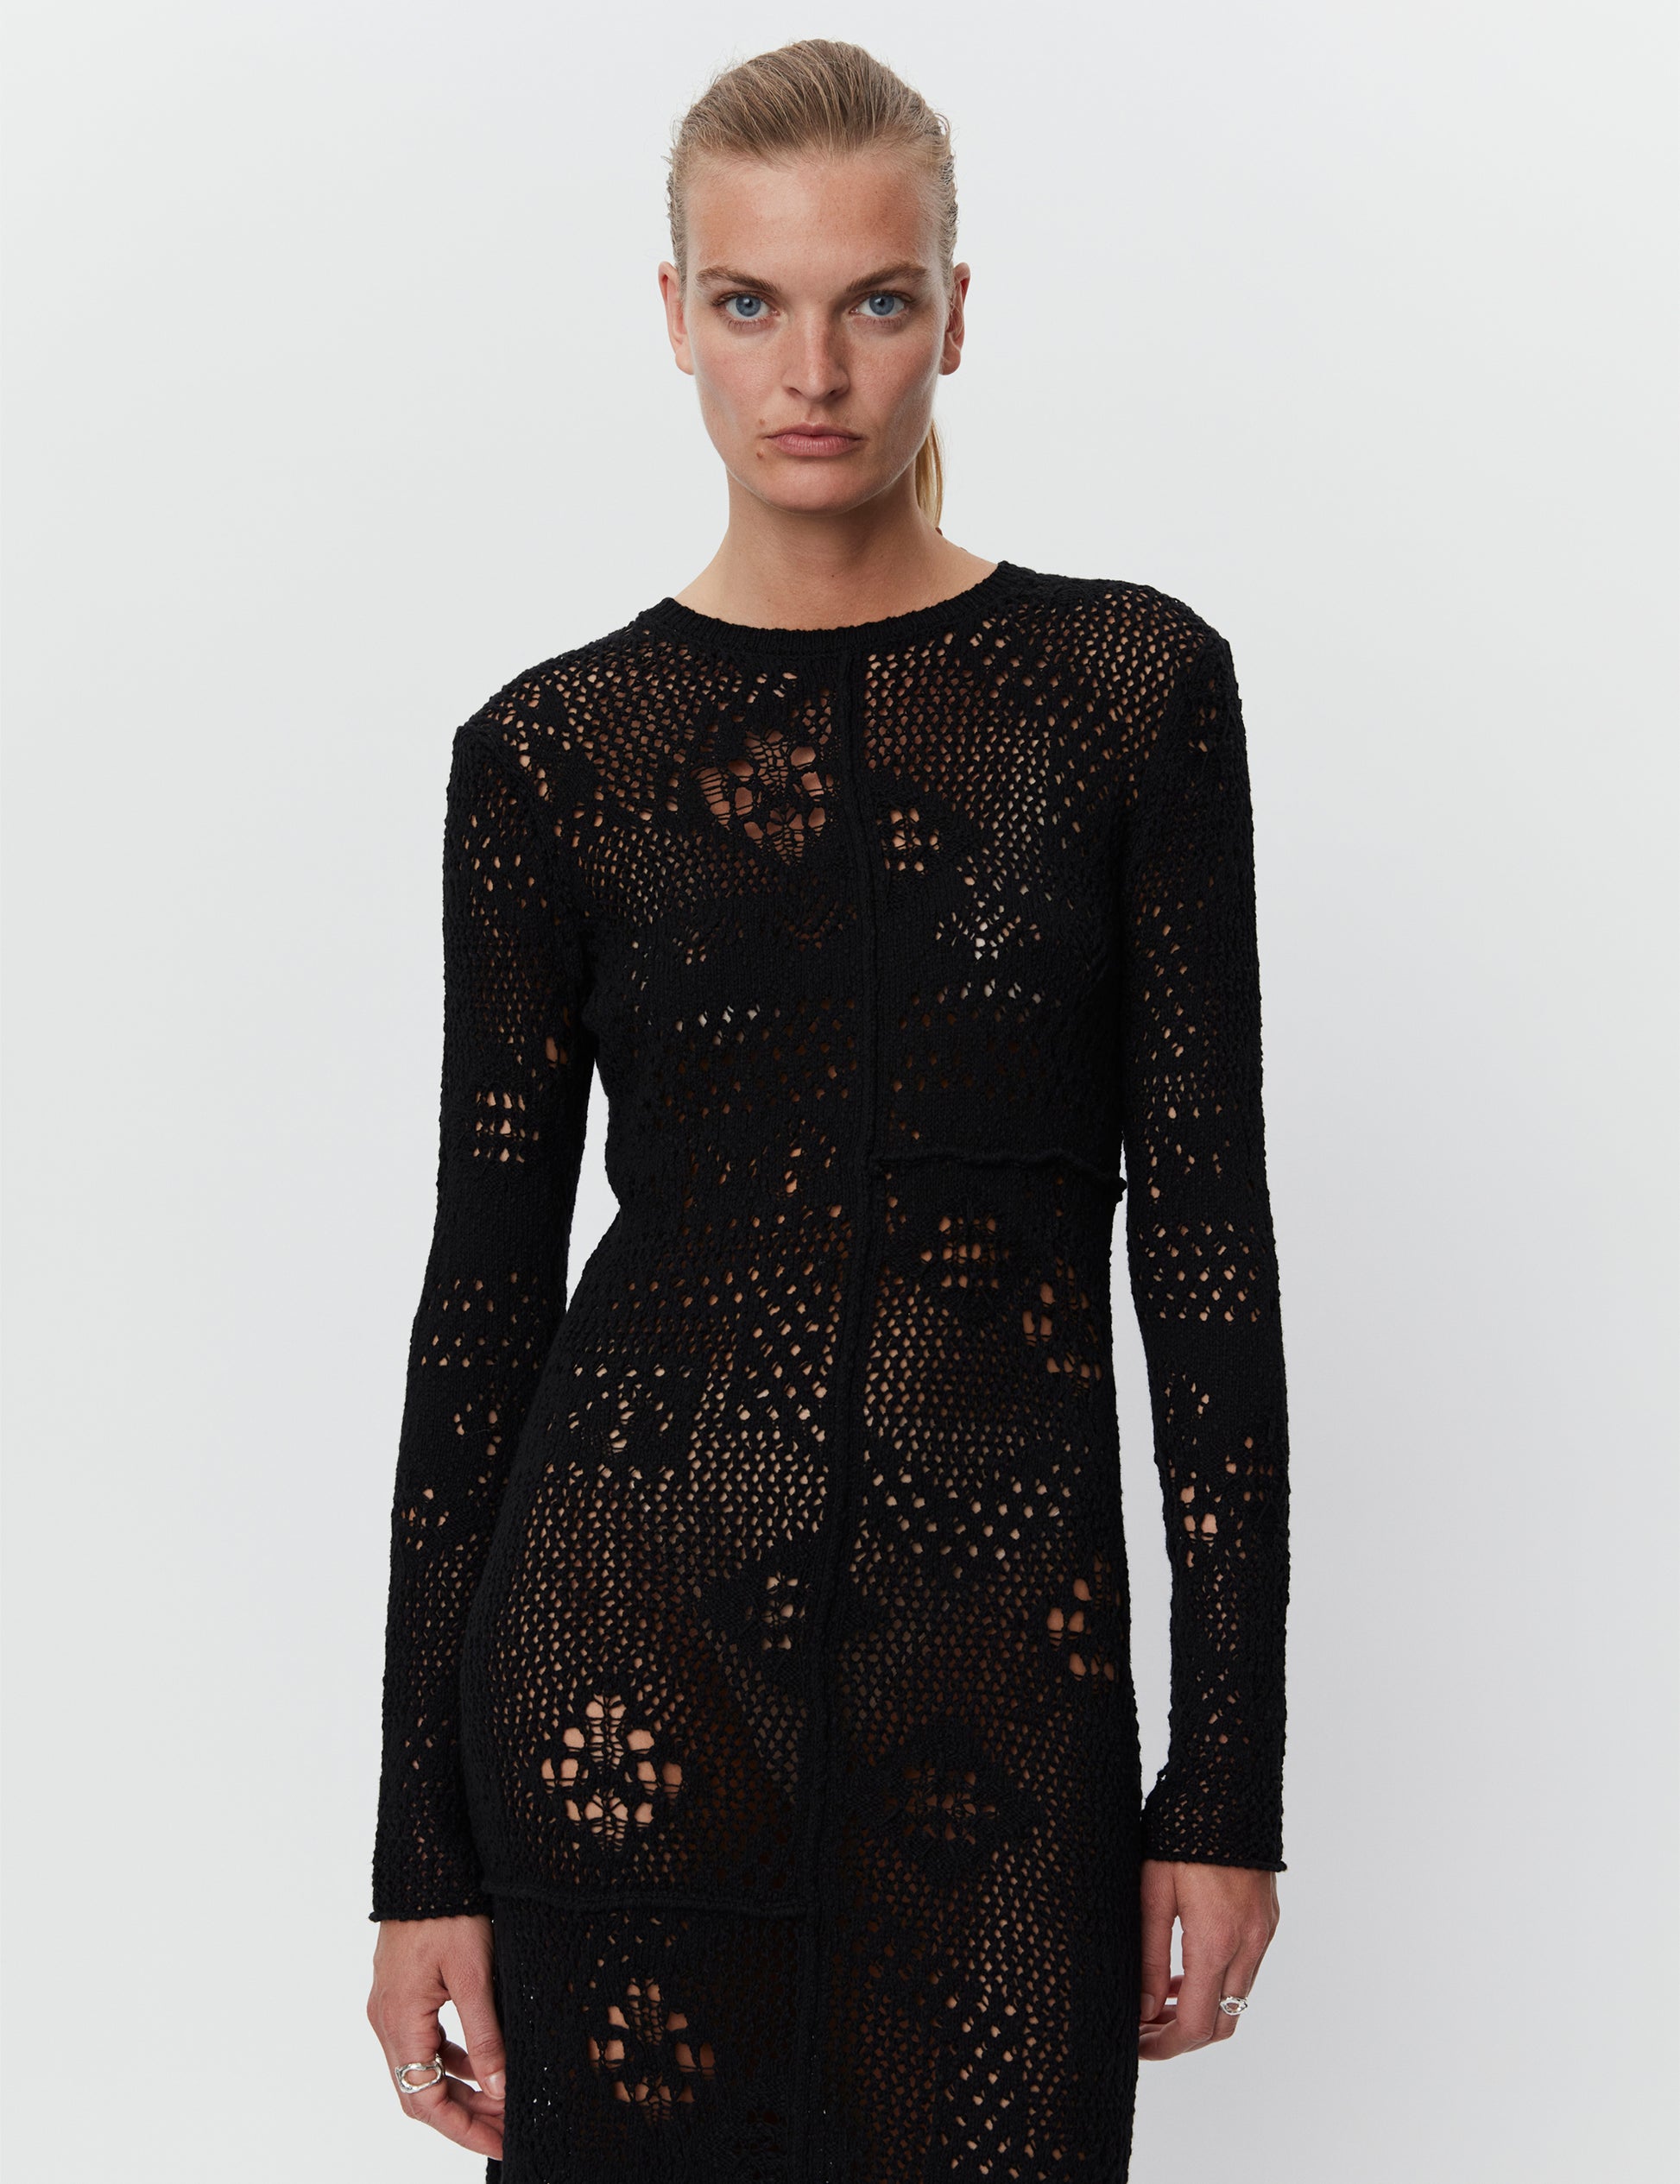 Day Birger - Benoit Black Artistic Crochet Dress